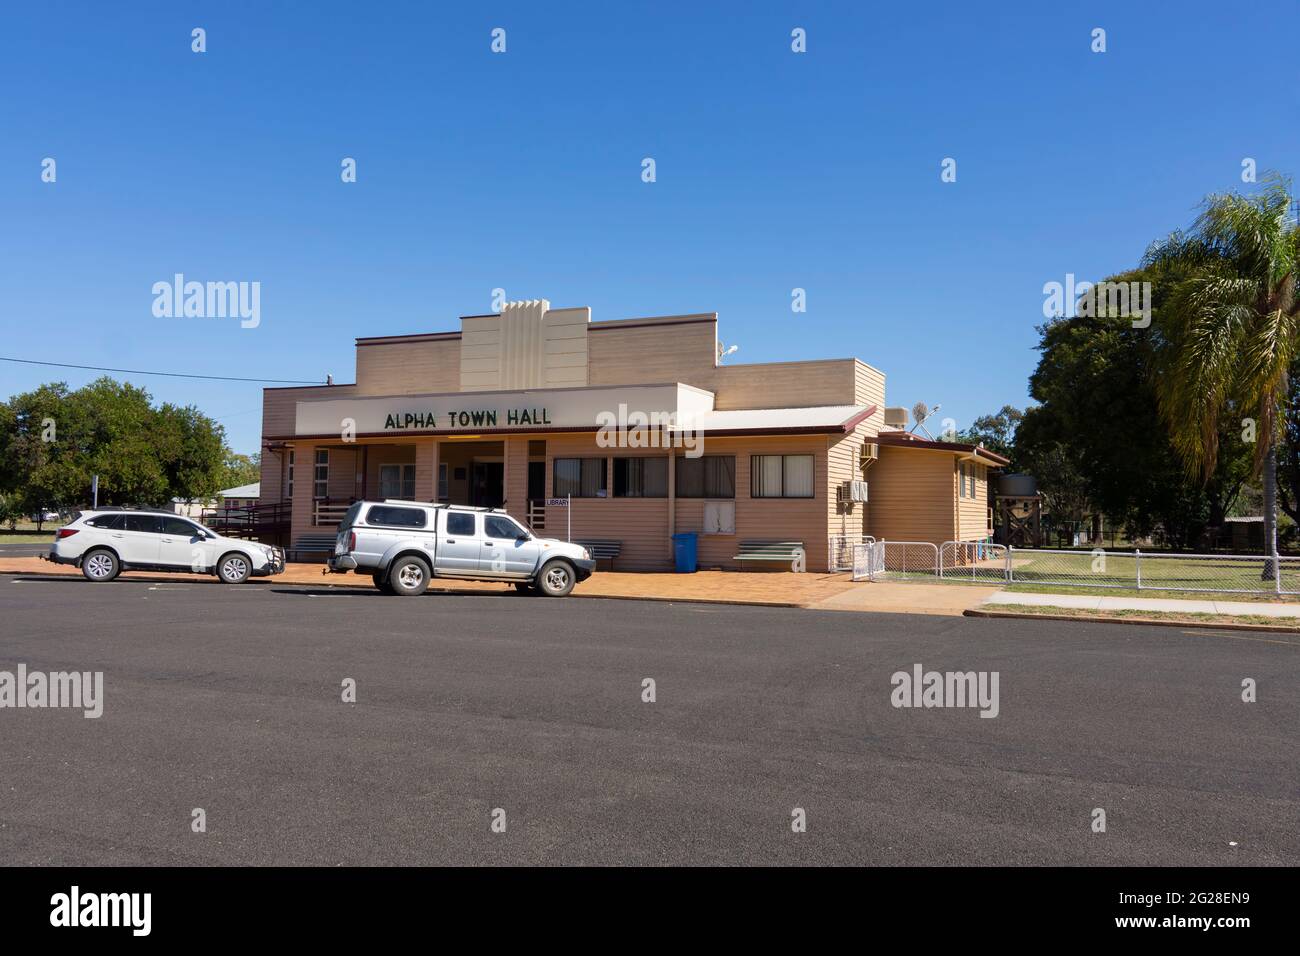 El ayuntamiento de Alpha, Queensland Occidental, Australia, construido en estilo art deco y principalmente hecho de pizarra también se utiliza como centro comunitario. Foto de stock